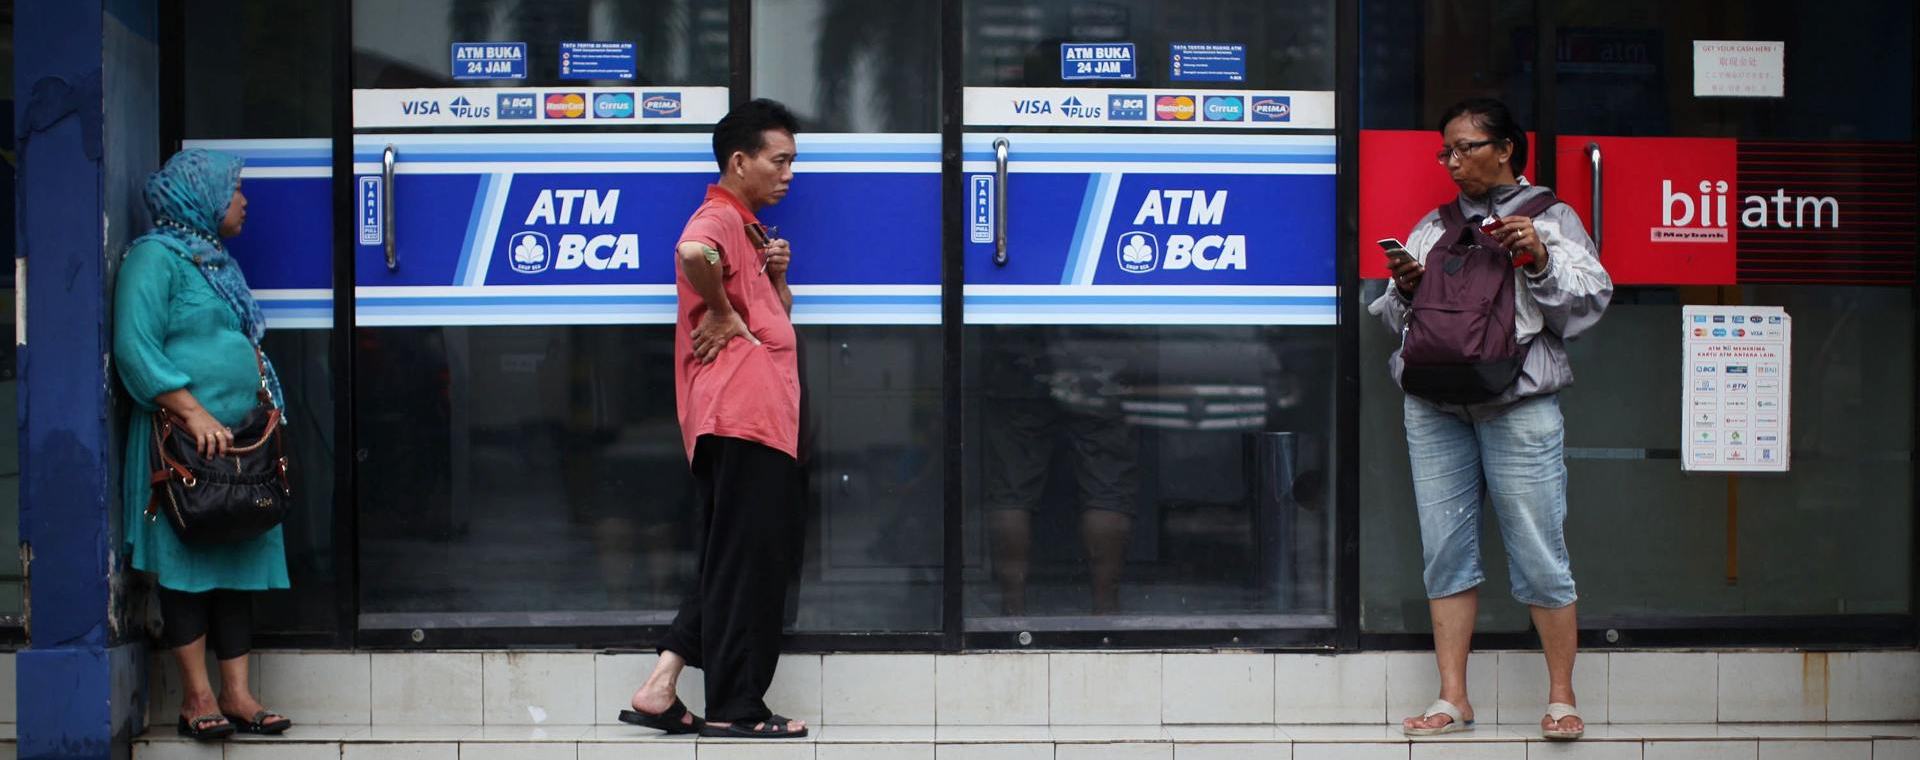 Pejalan kaki berdiri di samping fasilitas anjungan tunai mandiri (ATM) yang dioperasikan oleh PT Bank Central Asia (BCA) di Jakarta, Jumat, 18 Januari 2013. Bloomberg / Dimas Ardian